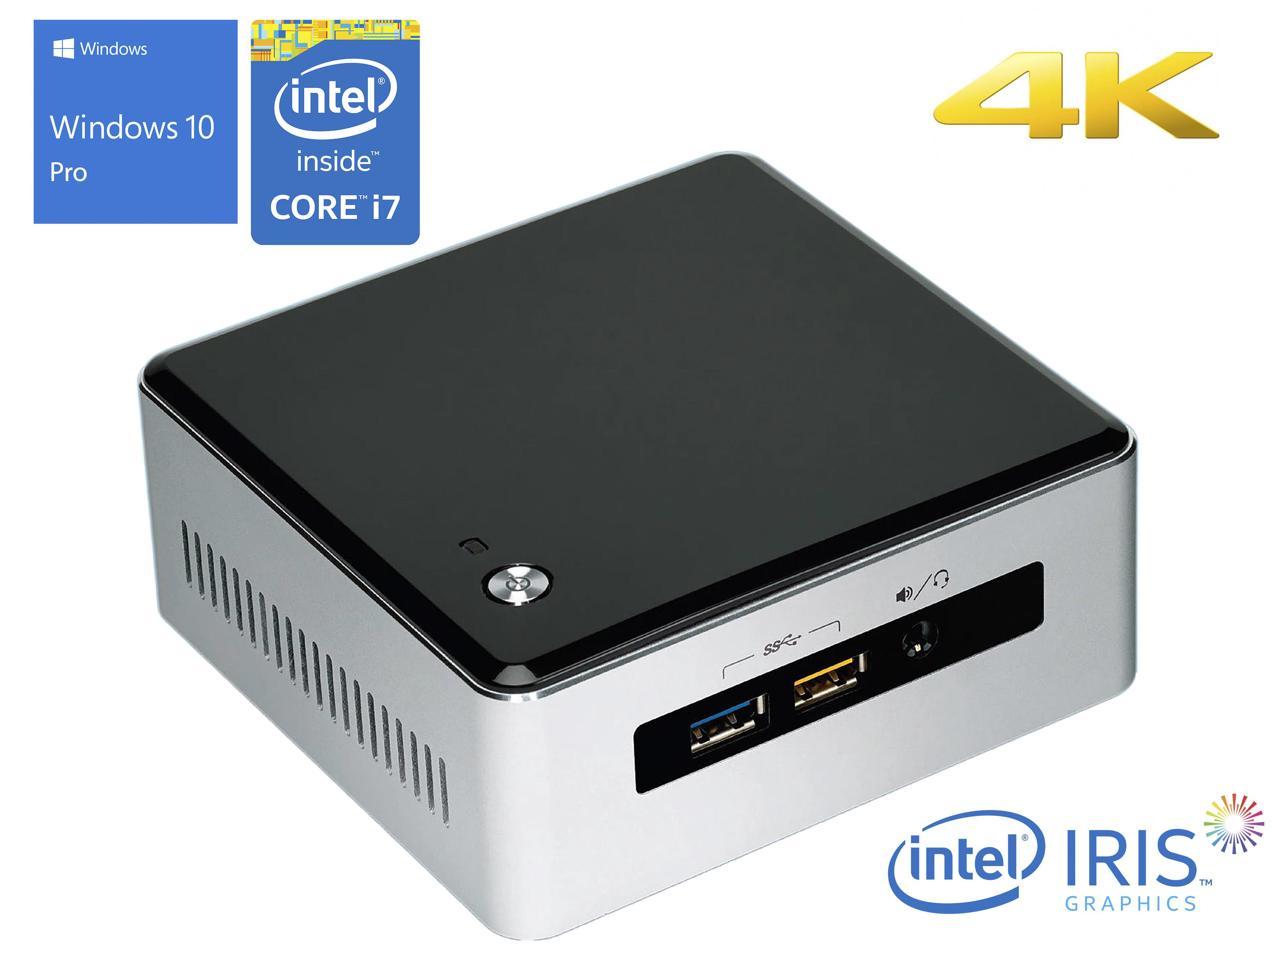 Intel NUC5i7RYH Mini PC, Intel Core i7-5557U Upto 3.40GHz, 8GB RAM, 128GB NVMe SSD + 1TB HDD, Mini HDMI, Mini DisplayPort, Wi-Fi, Bluetooth, Windows 10 Pro